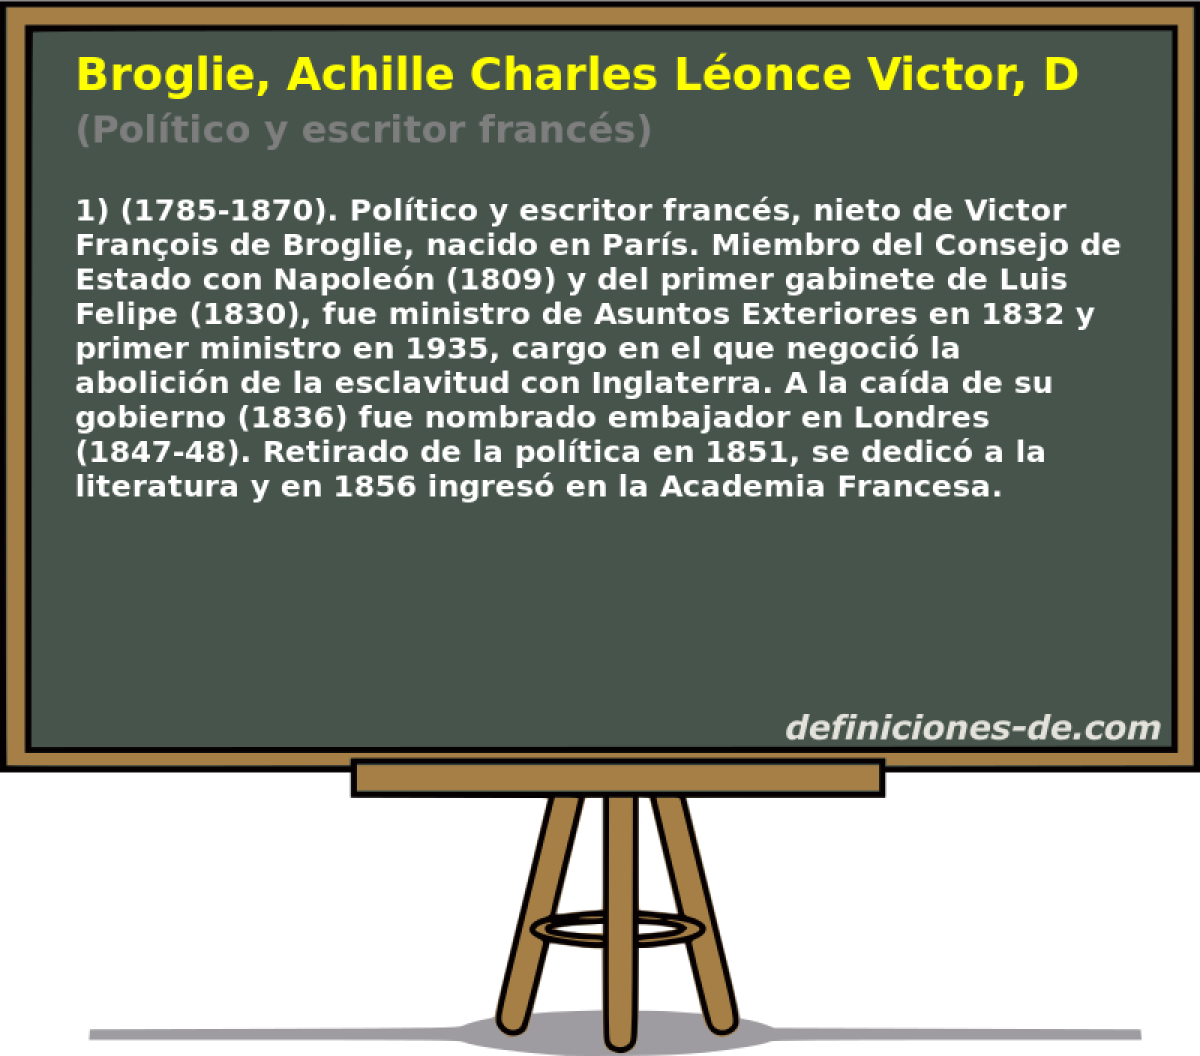 Broglie, Achille Charles Lonce Victor, Duque De (Poltico y escritor francs)